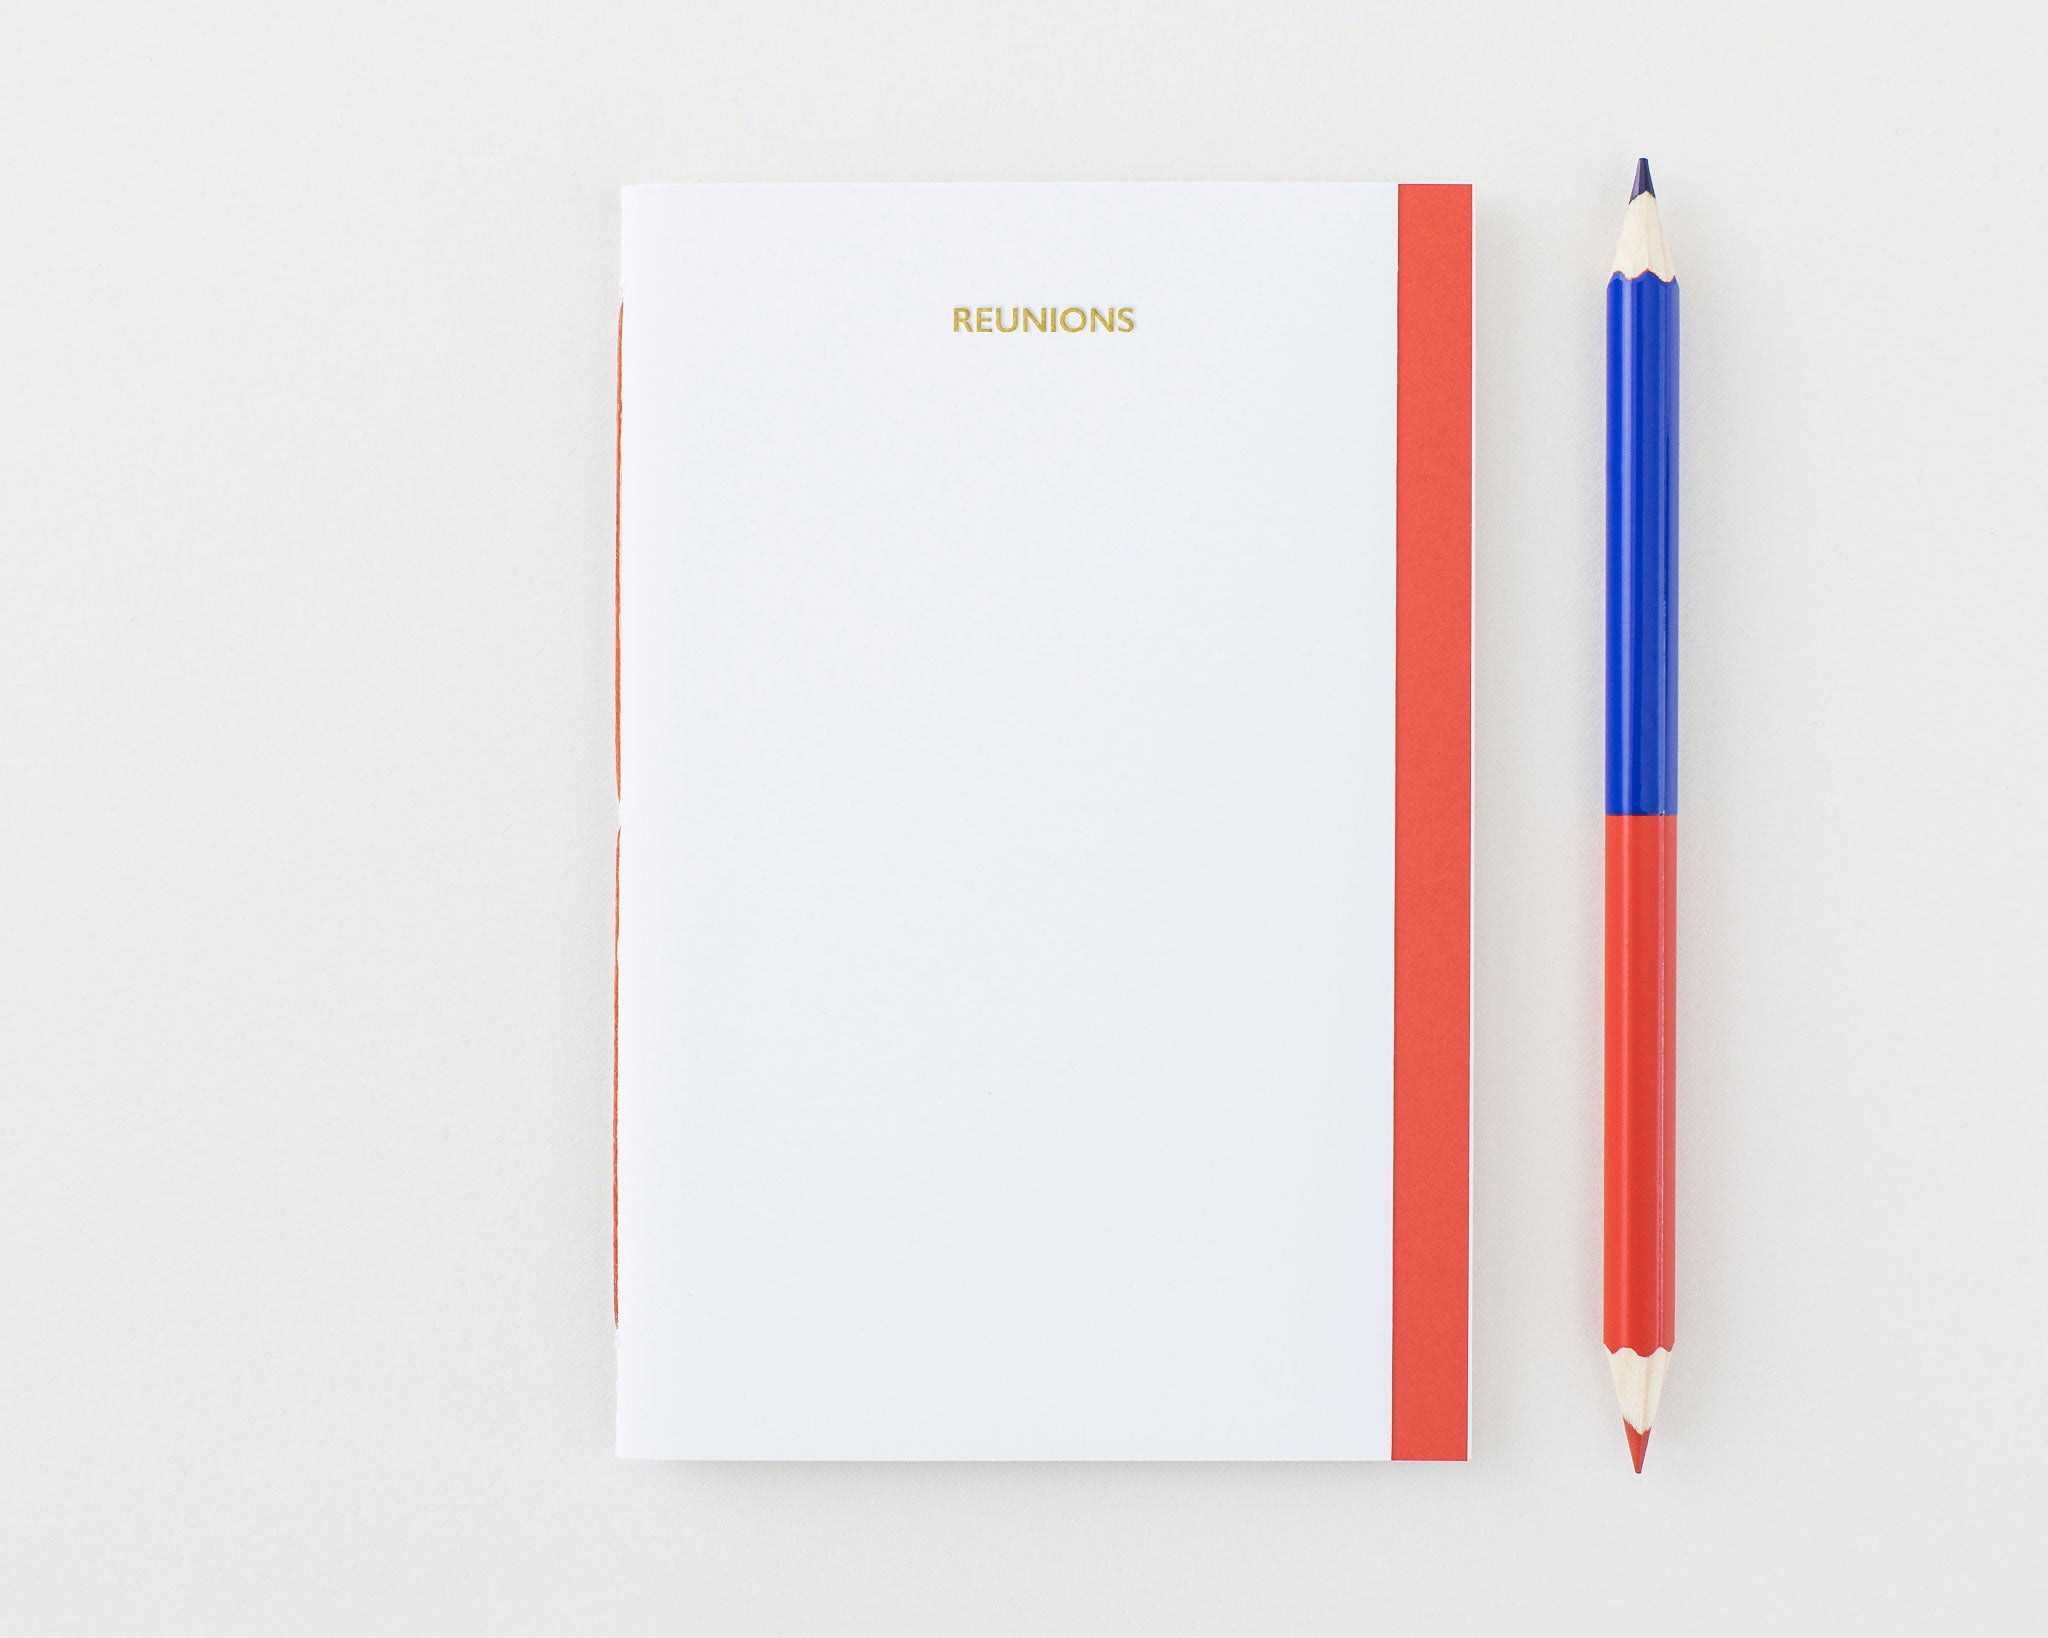 Notebook Medium mit Titel